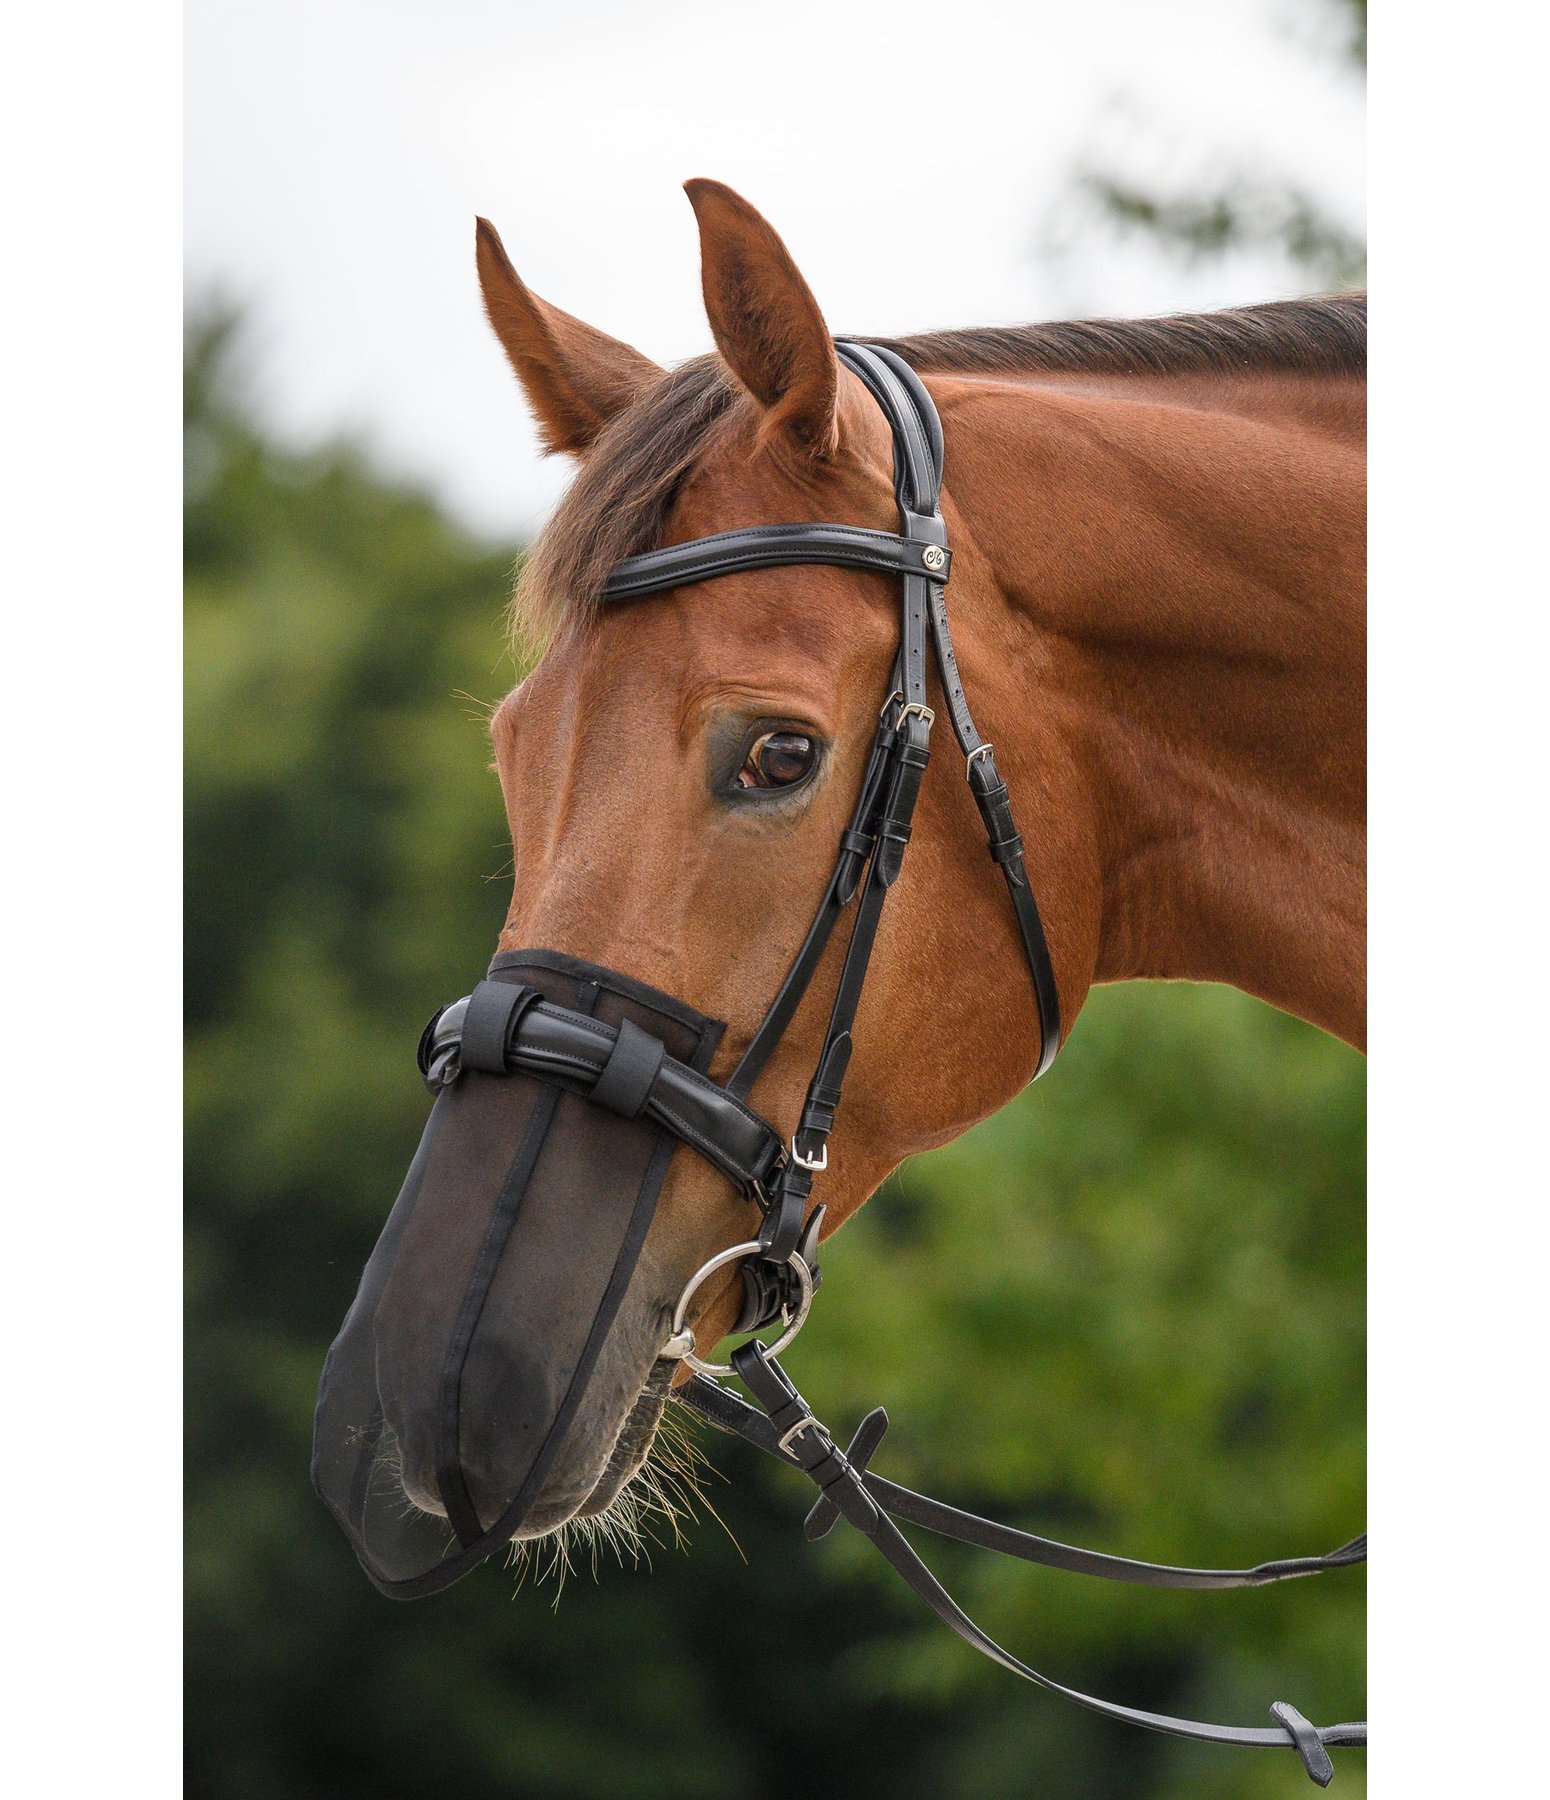 Protection de nez anti-encensement Equilibrium - accessoires cheval